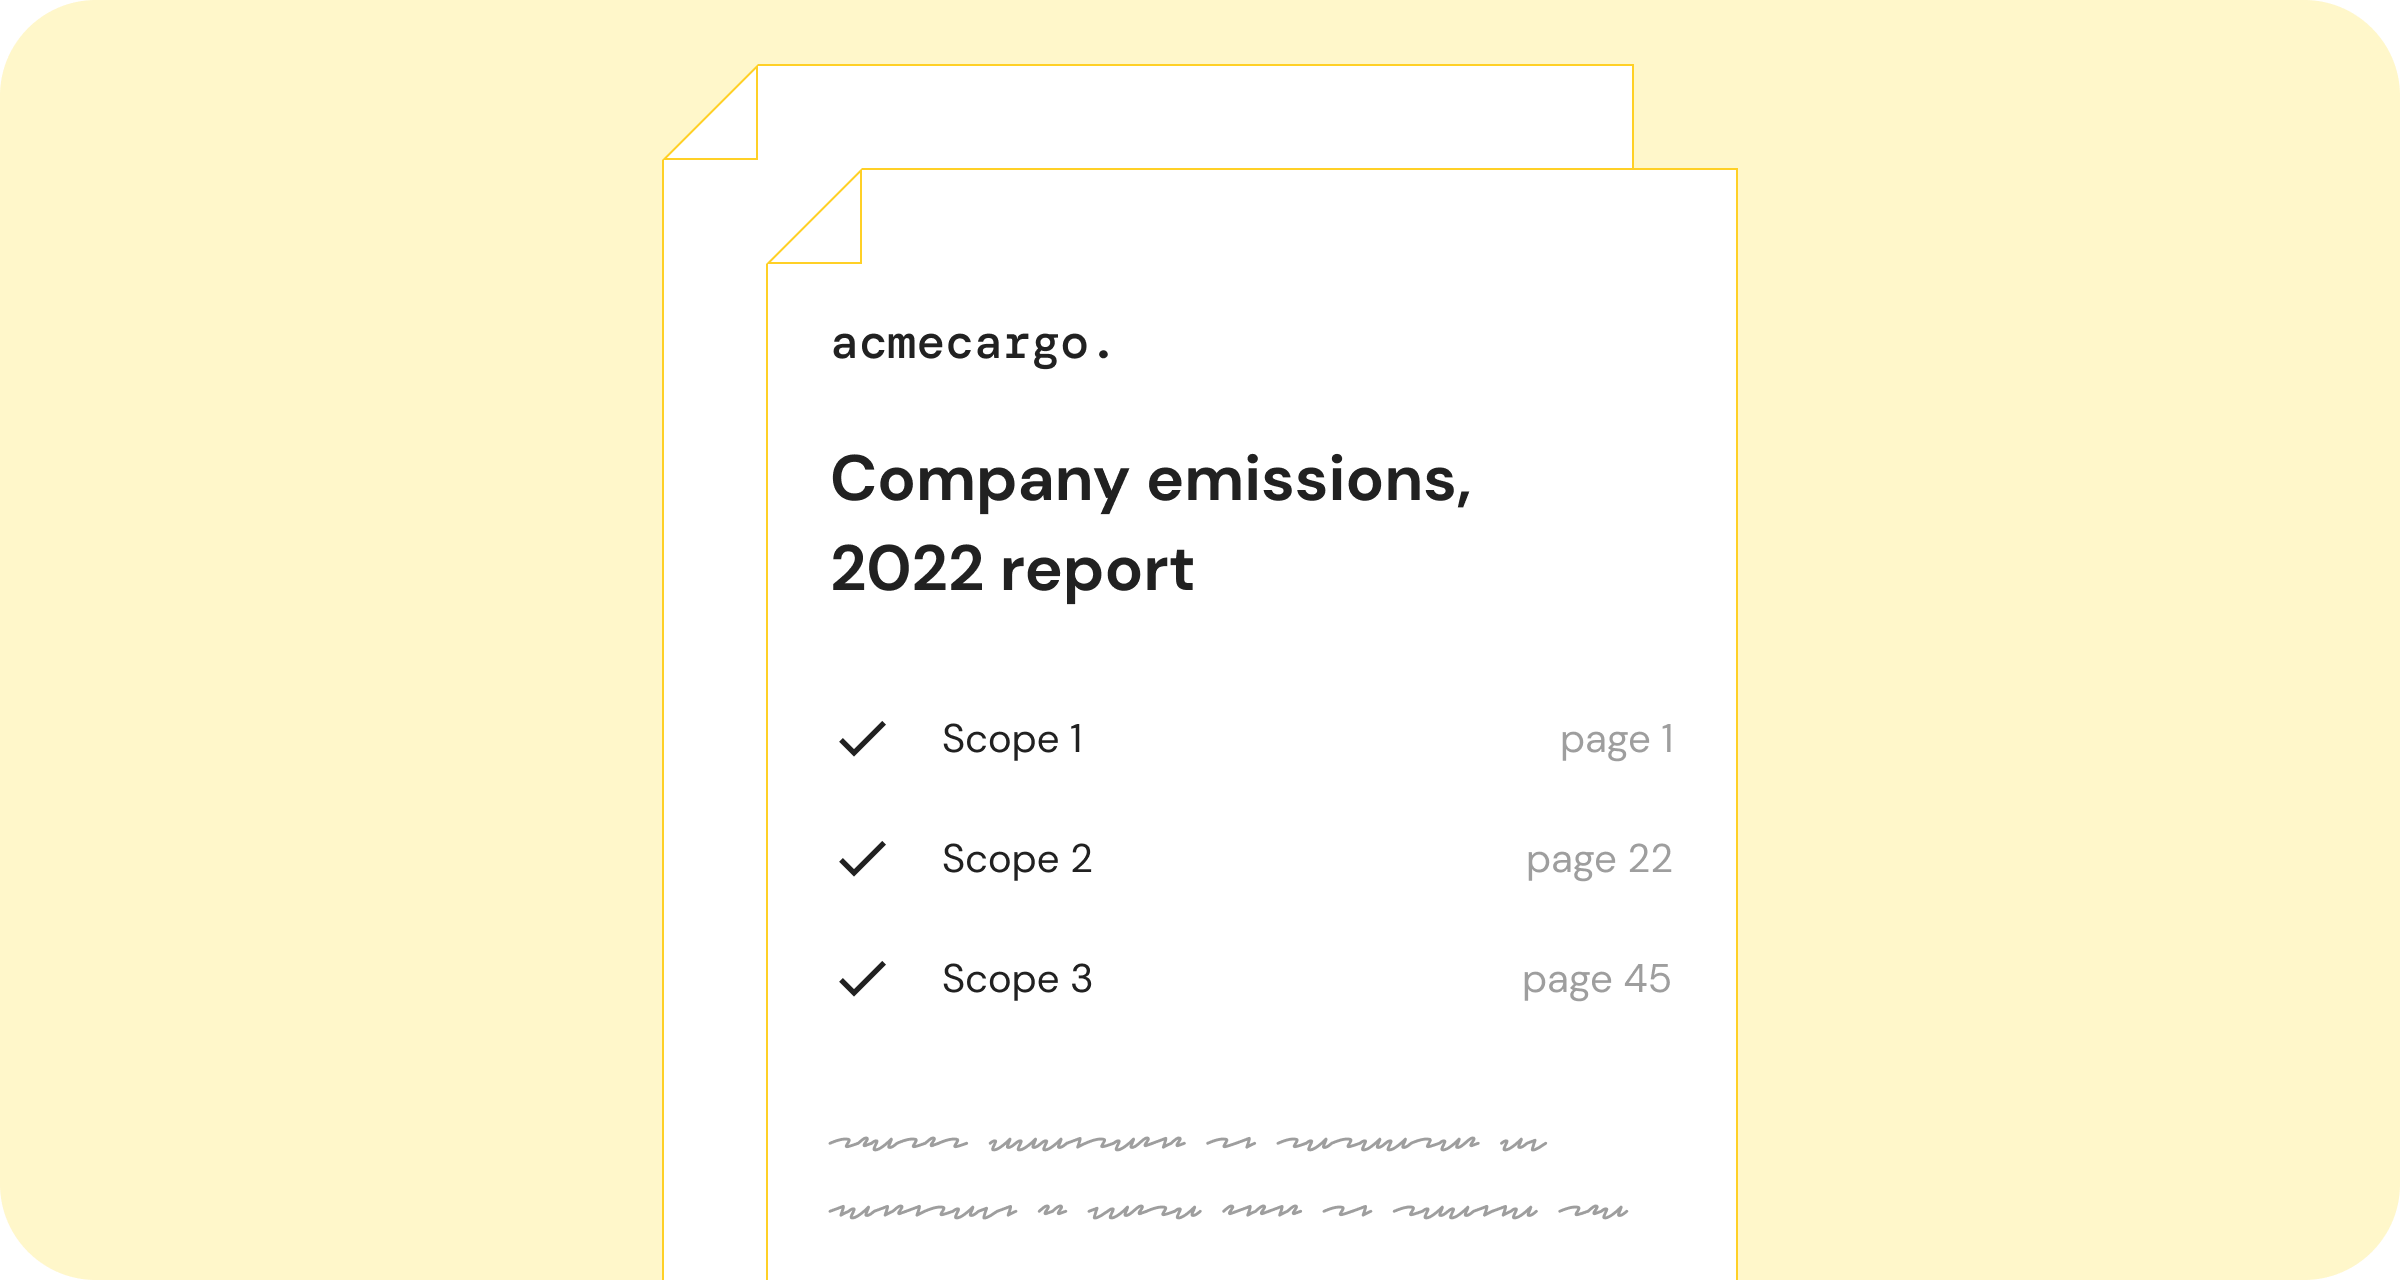 Company emissions, 2022 report